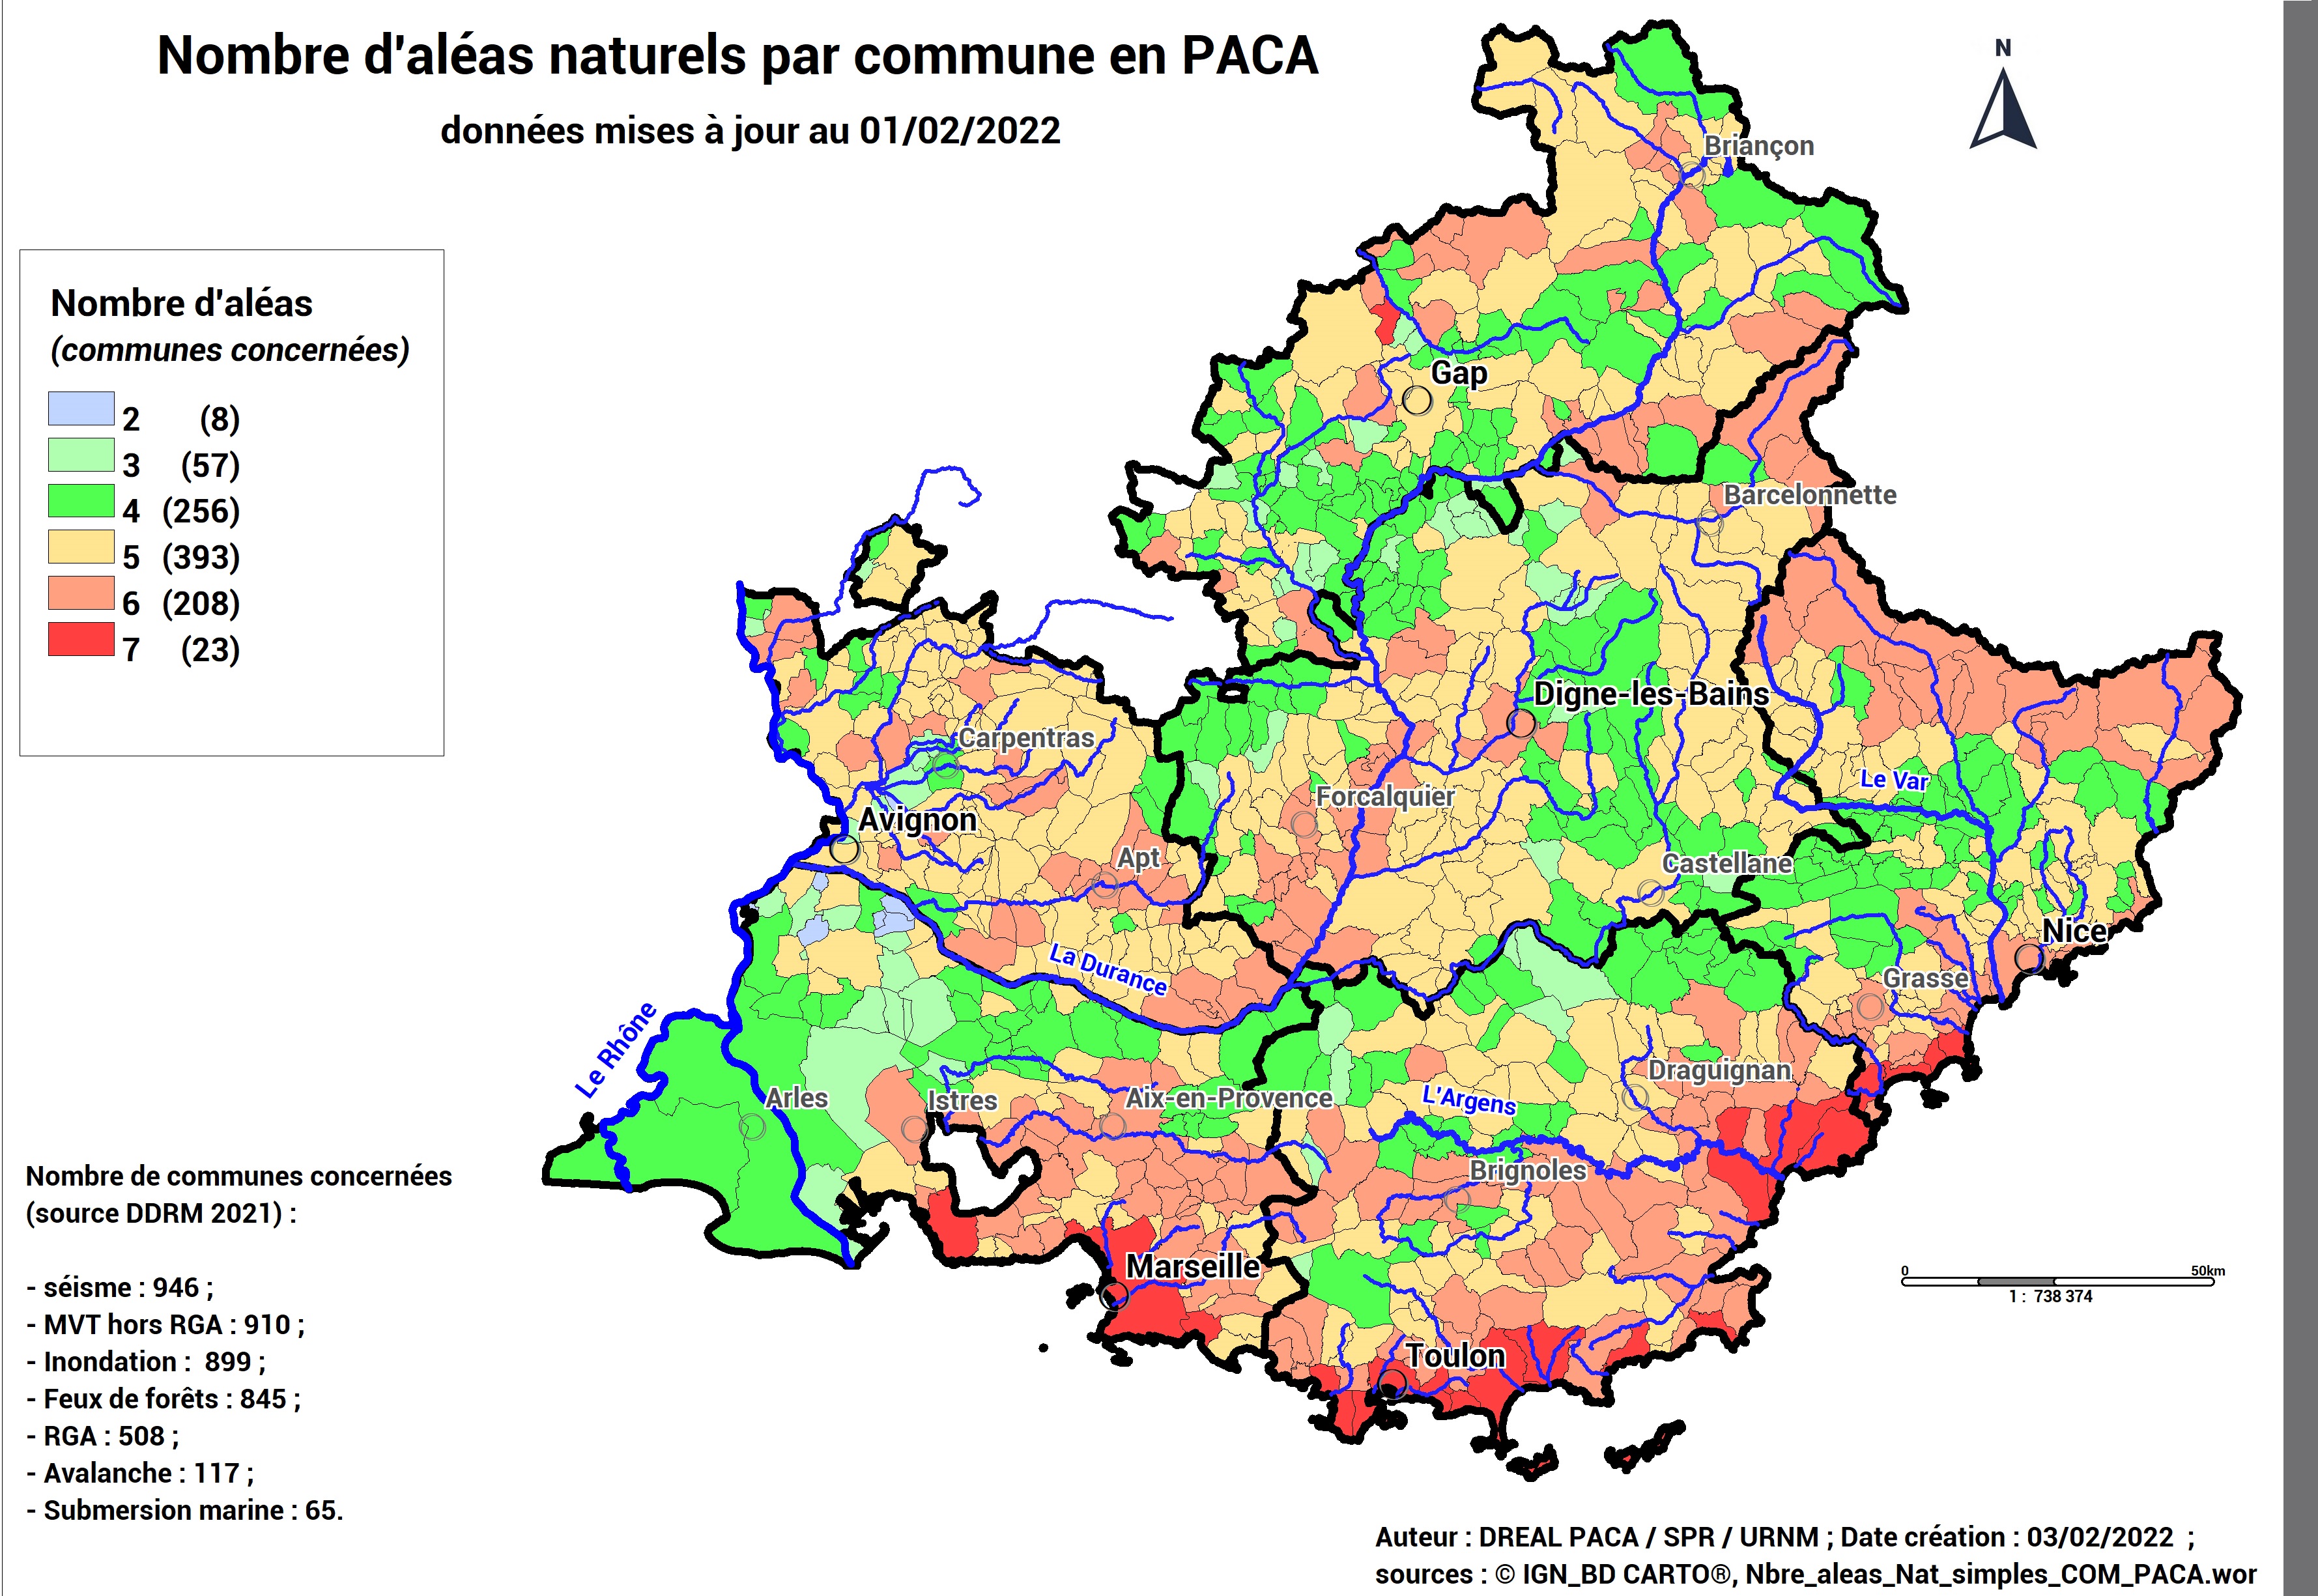 Nombre d'aléas naturels par commune au 01/02/2022 (source géorisques)